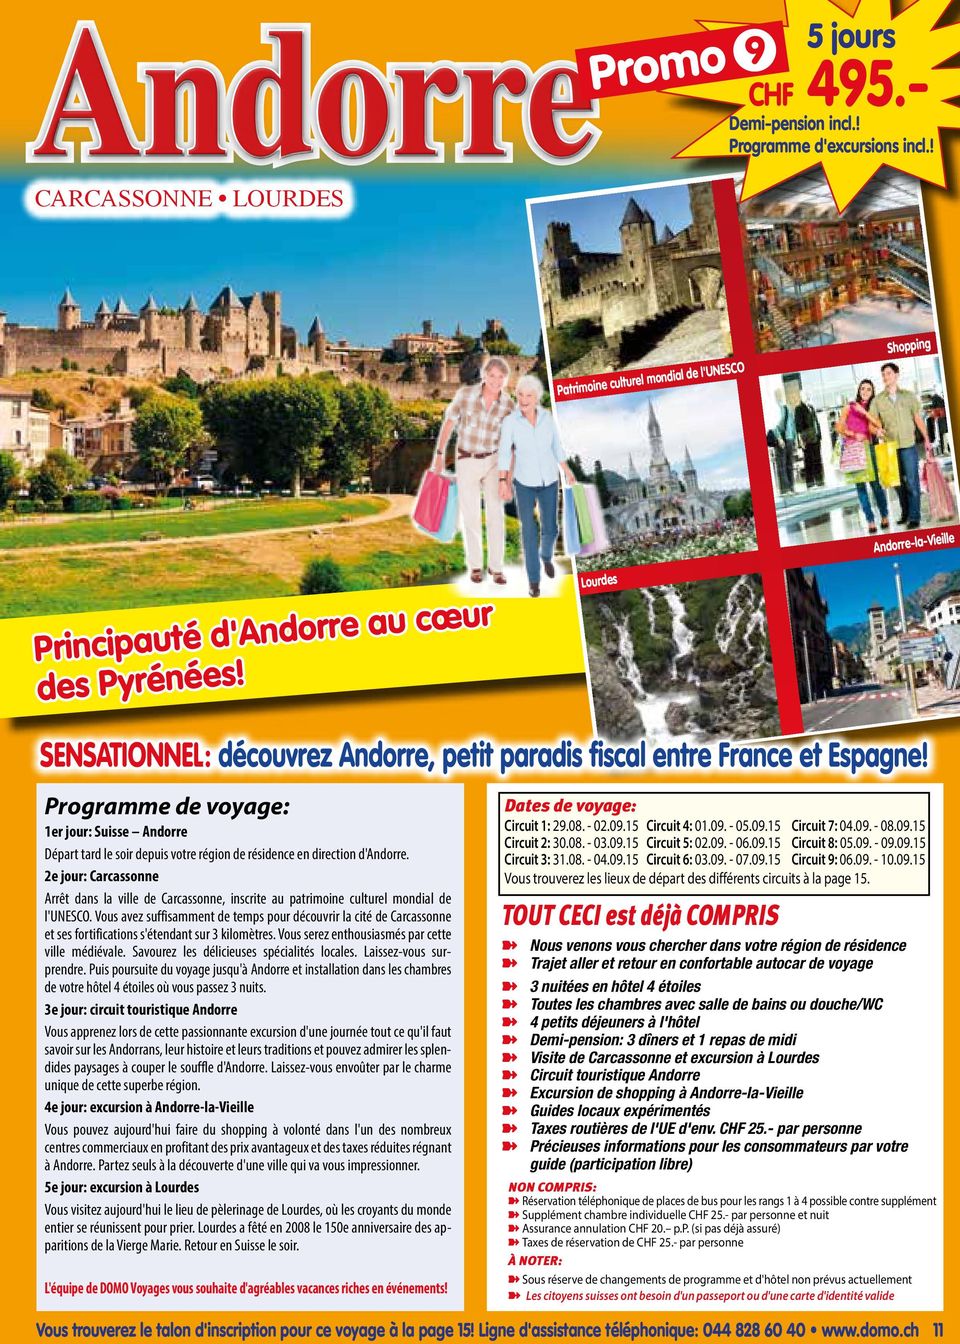 2e jour: Carcassonne Arrêt dans la ville de Carcassonne, inscrite au patrimoine culturel mondial de l'unesco.